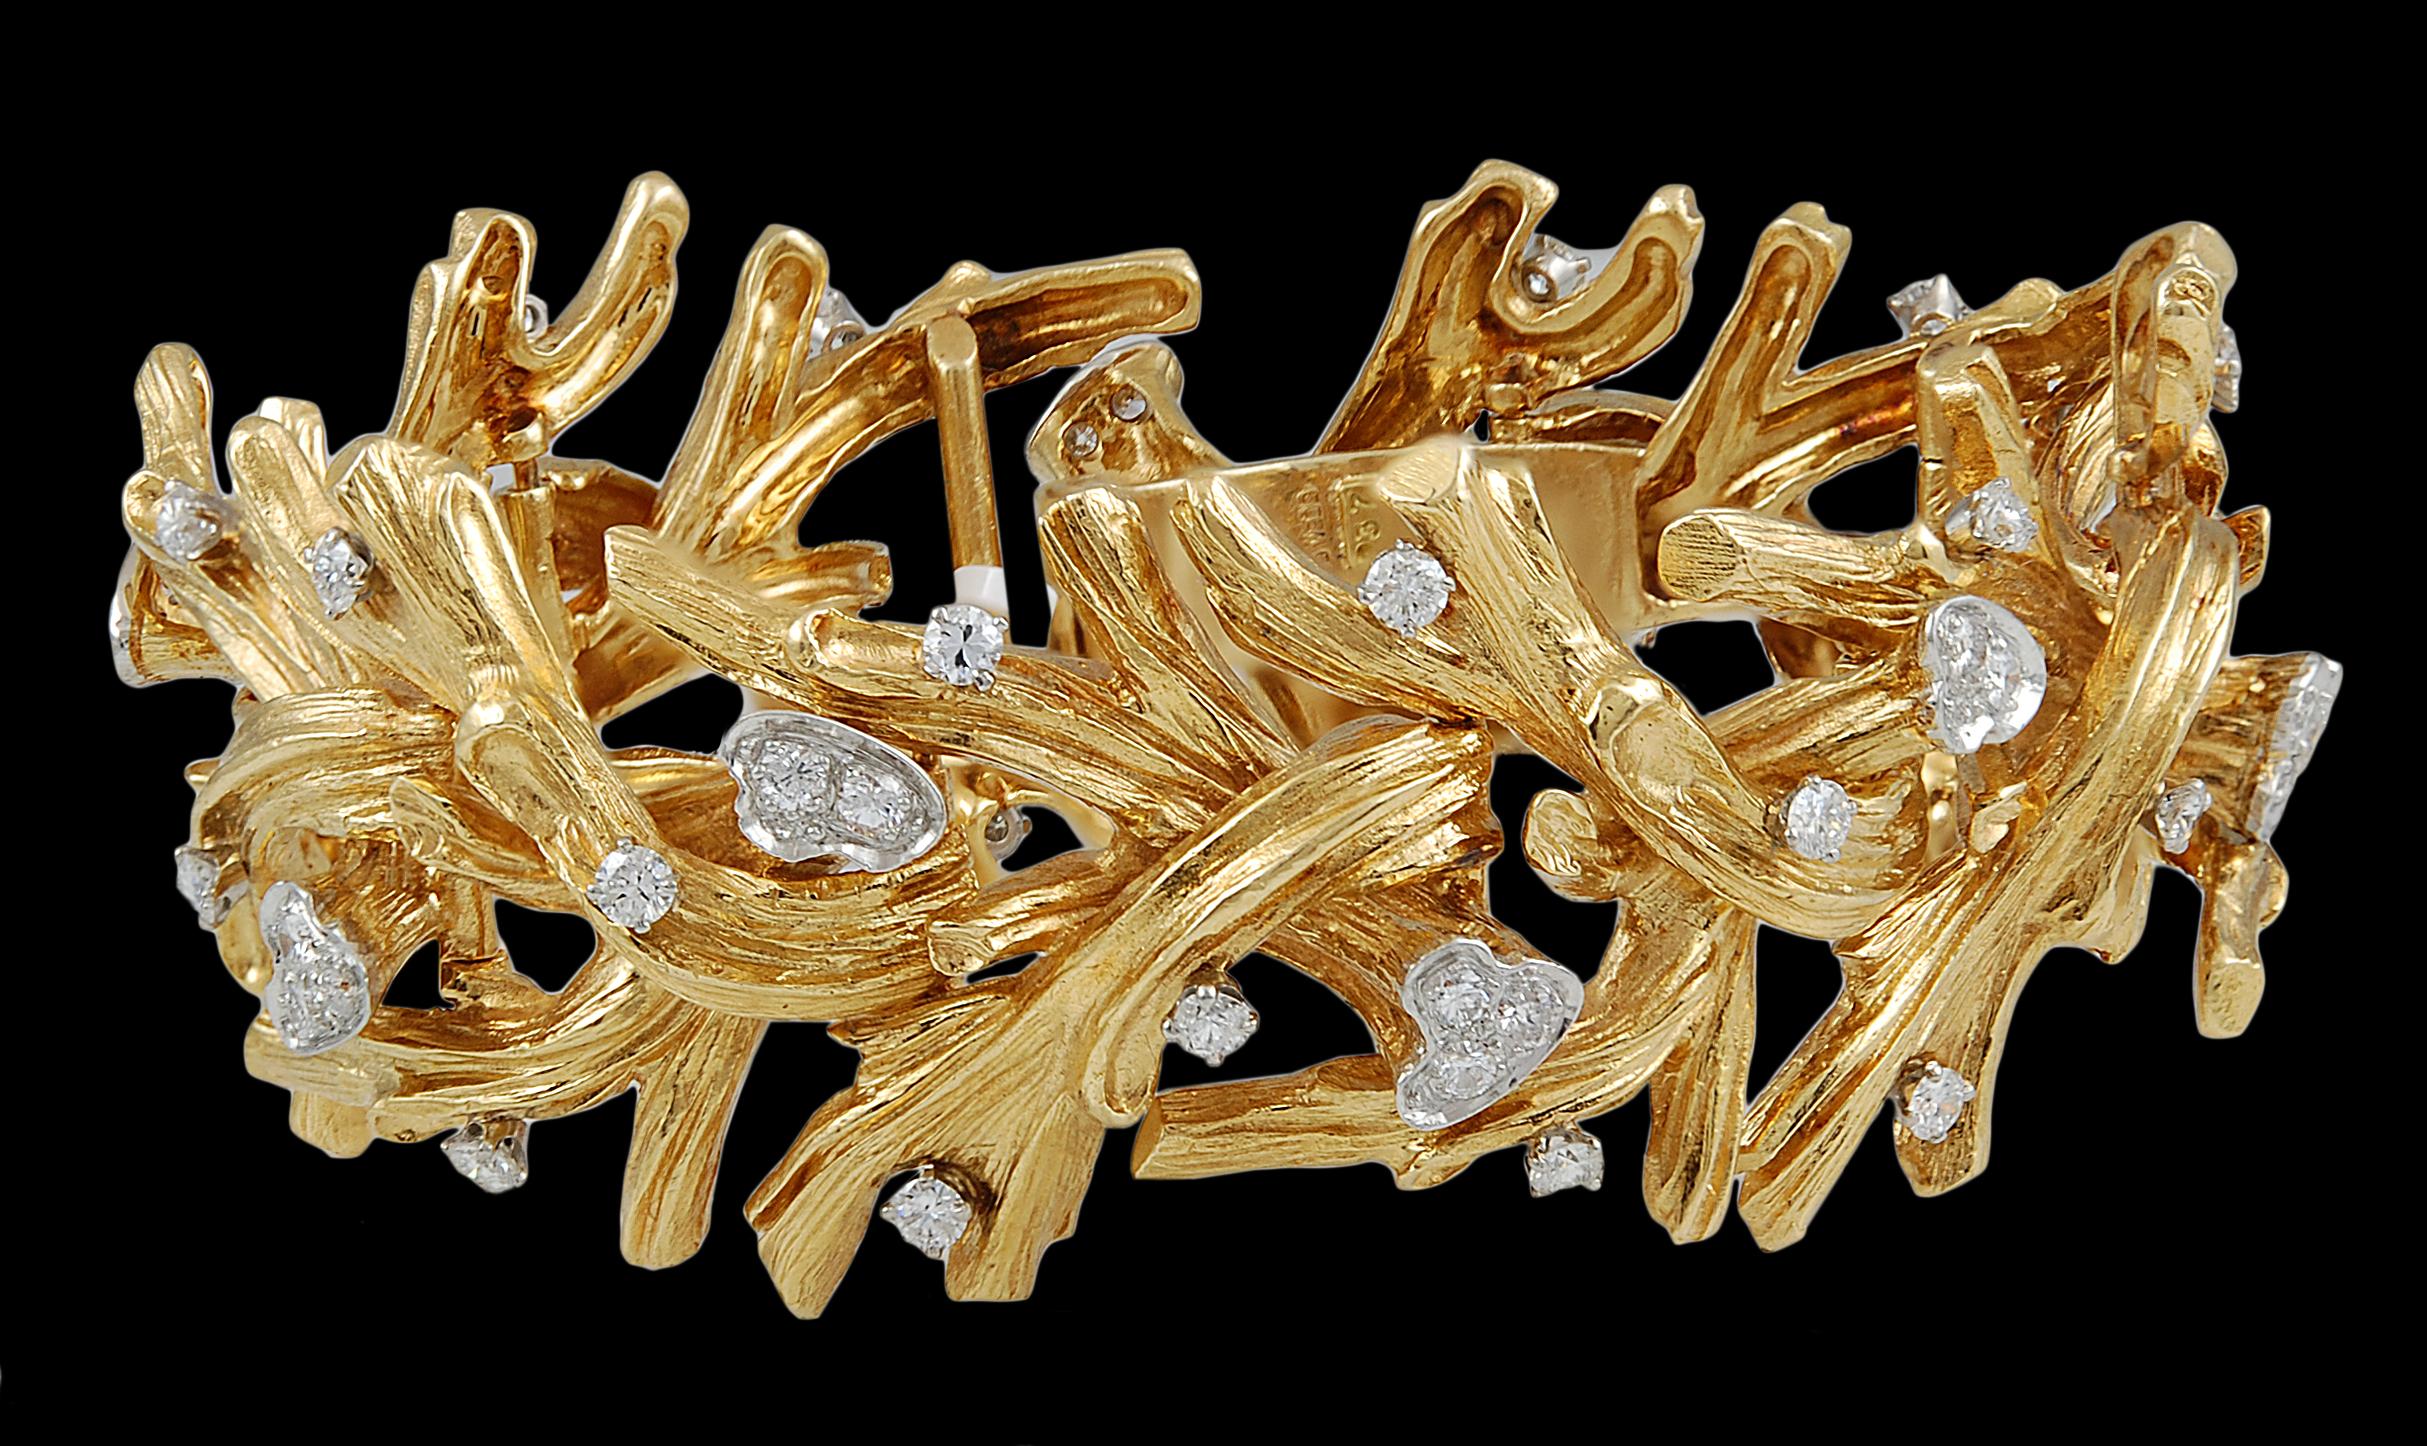 Ein Paar Ohrringe und ein Armband in Form eines gehämmerten 18-karätigen Goldblattes, verziert mit Diamanten im Rundschliff. Ca. 1980er Jahre  Unterzeichnet David Webb.

Vintage und Estate Collection'S